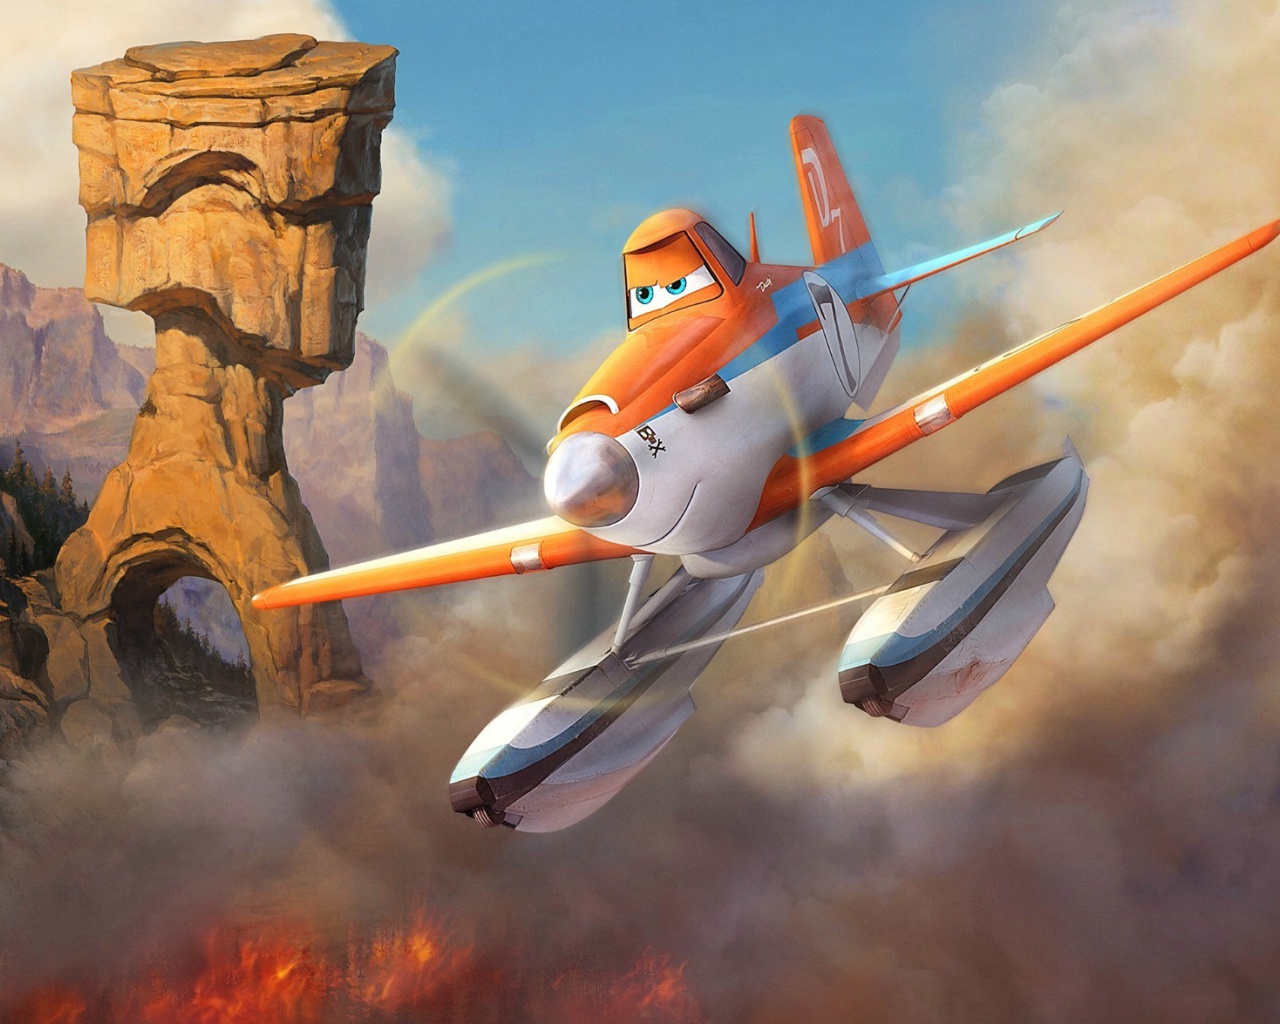 Das Planes Fire and Rescue 2014 Wallpaper 1280x1024